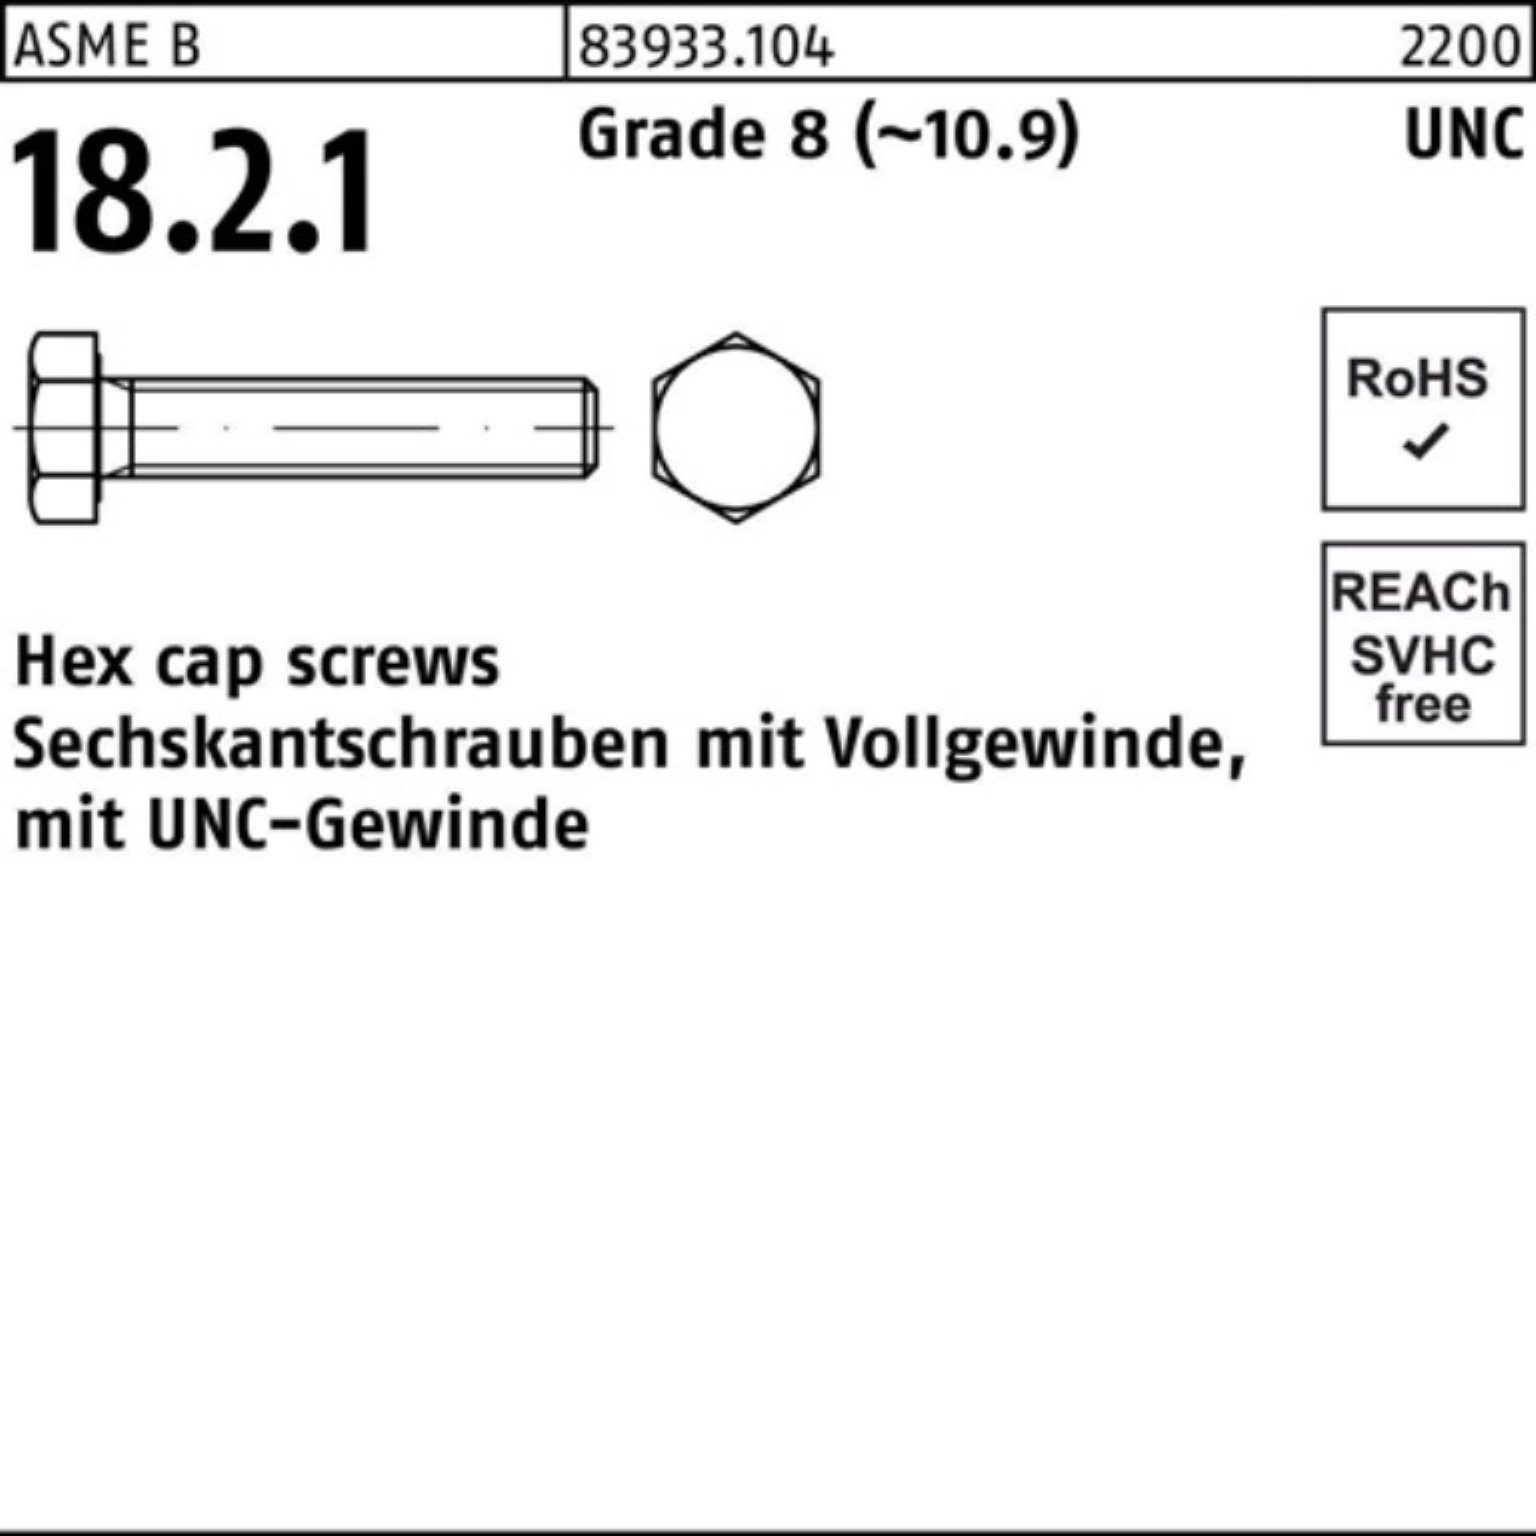 Reyher Sechskantschraube 100er Pack Sechskantschraube R 83933 UNC-Gewinde VG 7/16x 1 Grade 8